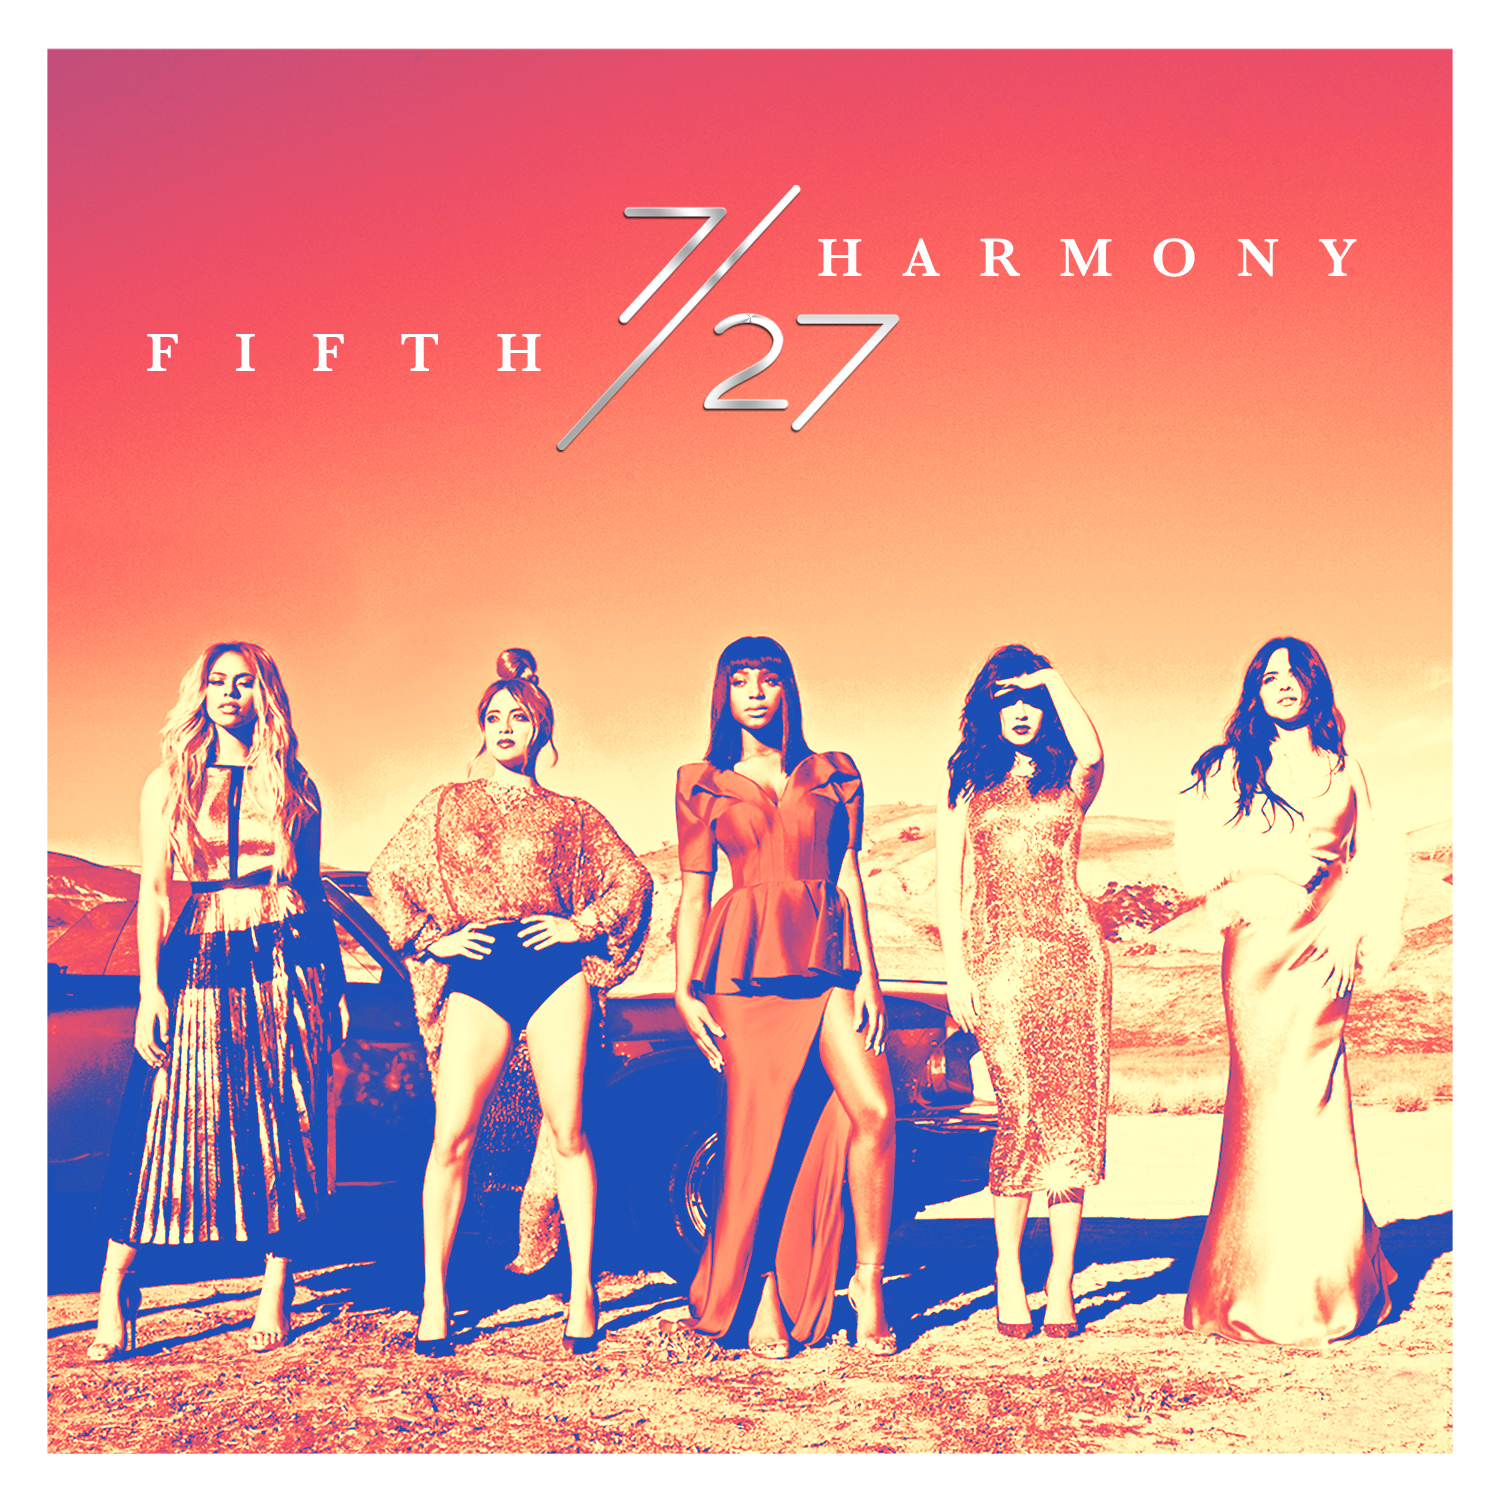 I Lied | Fifth Harmony Wiki | Fandom powered by Wikia